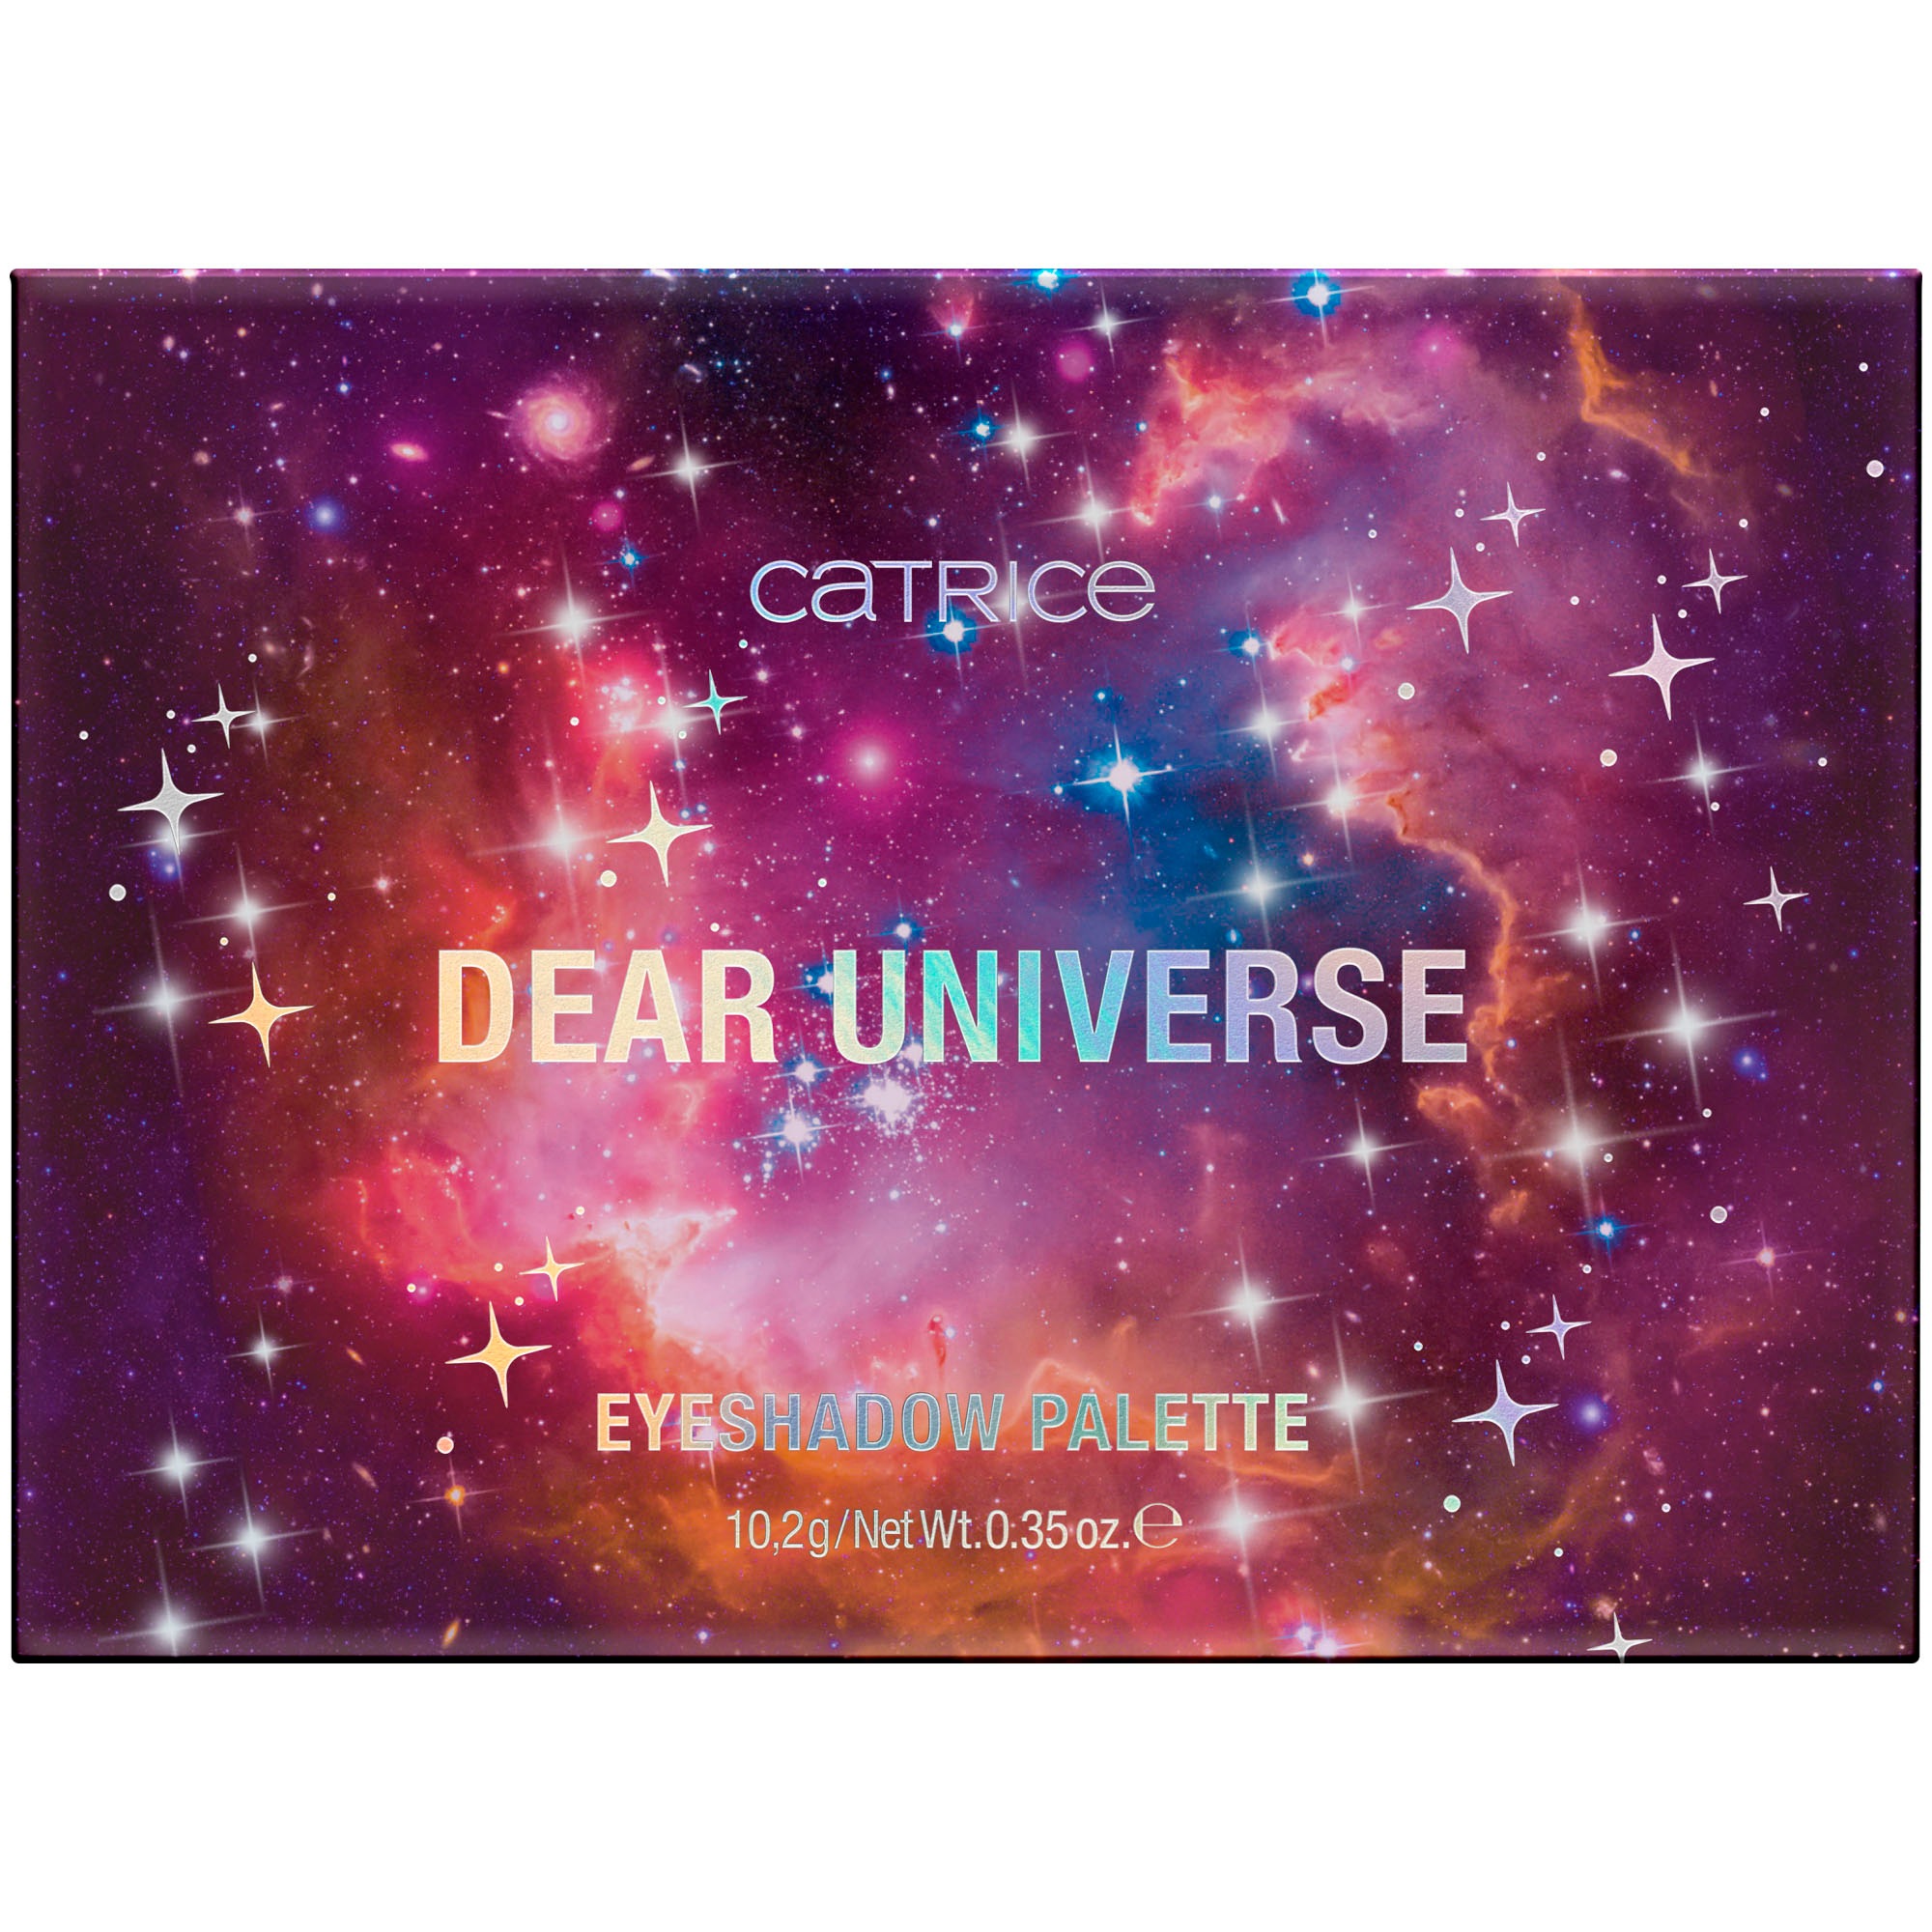 Catrice Lidschatten-Palette bei »Dear Universe online Eyeshadow Palette« UNIVERSAL